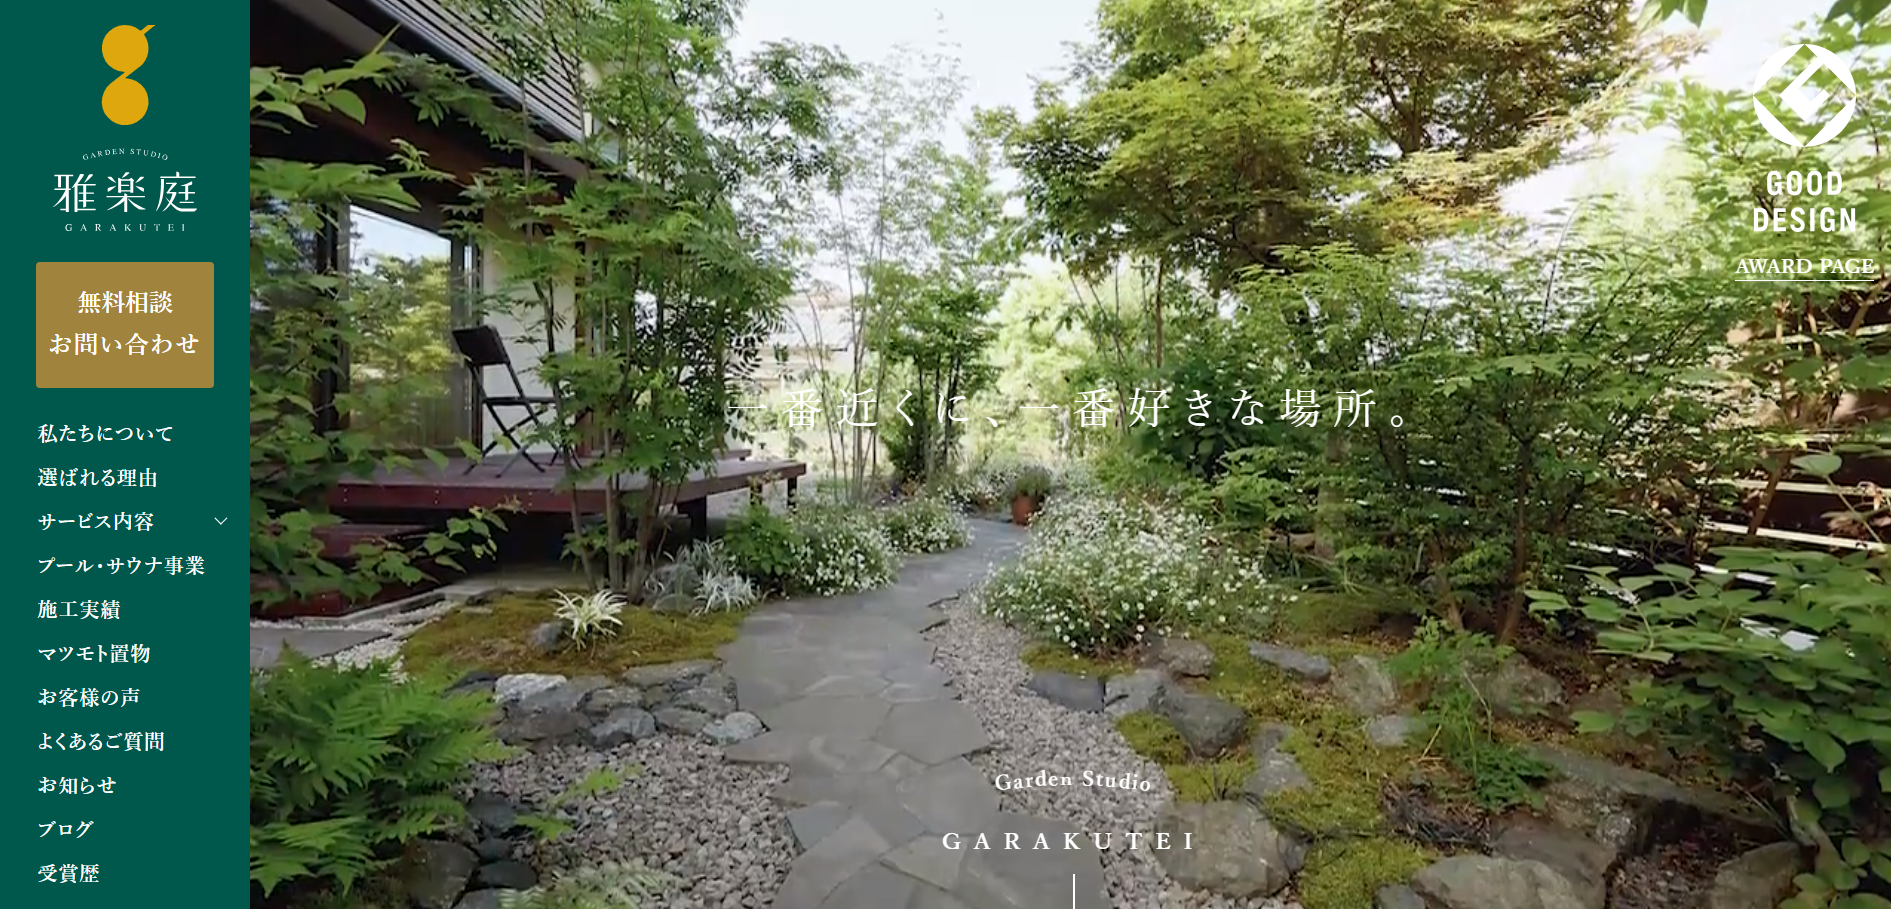 新潟県で評判のおすすめ外構業者ランキング 第4位 ガーデンスタジオ雅楽庭